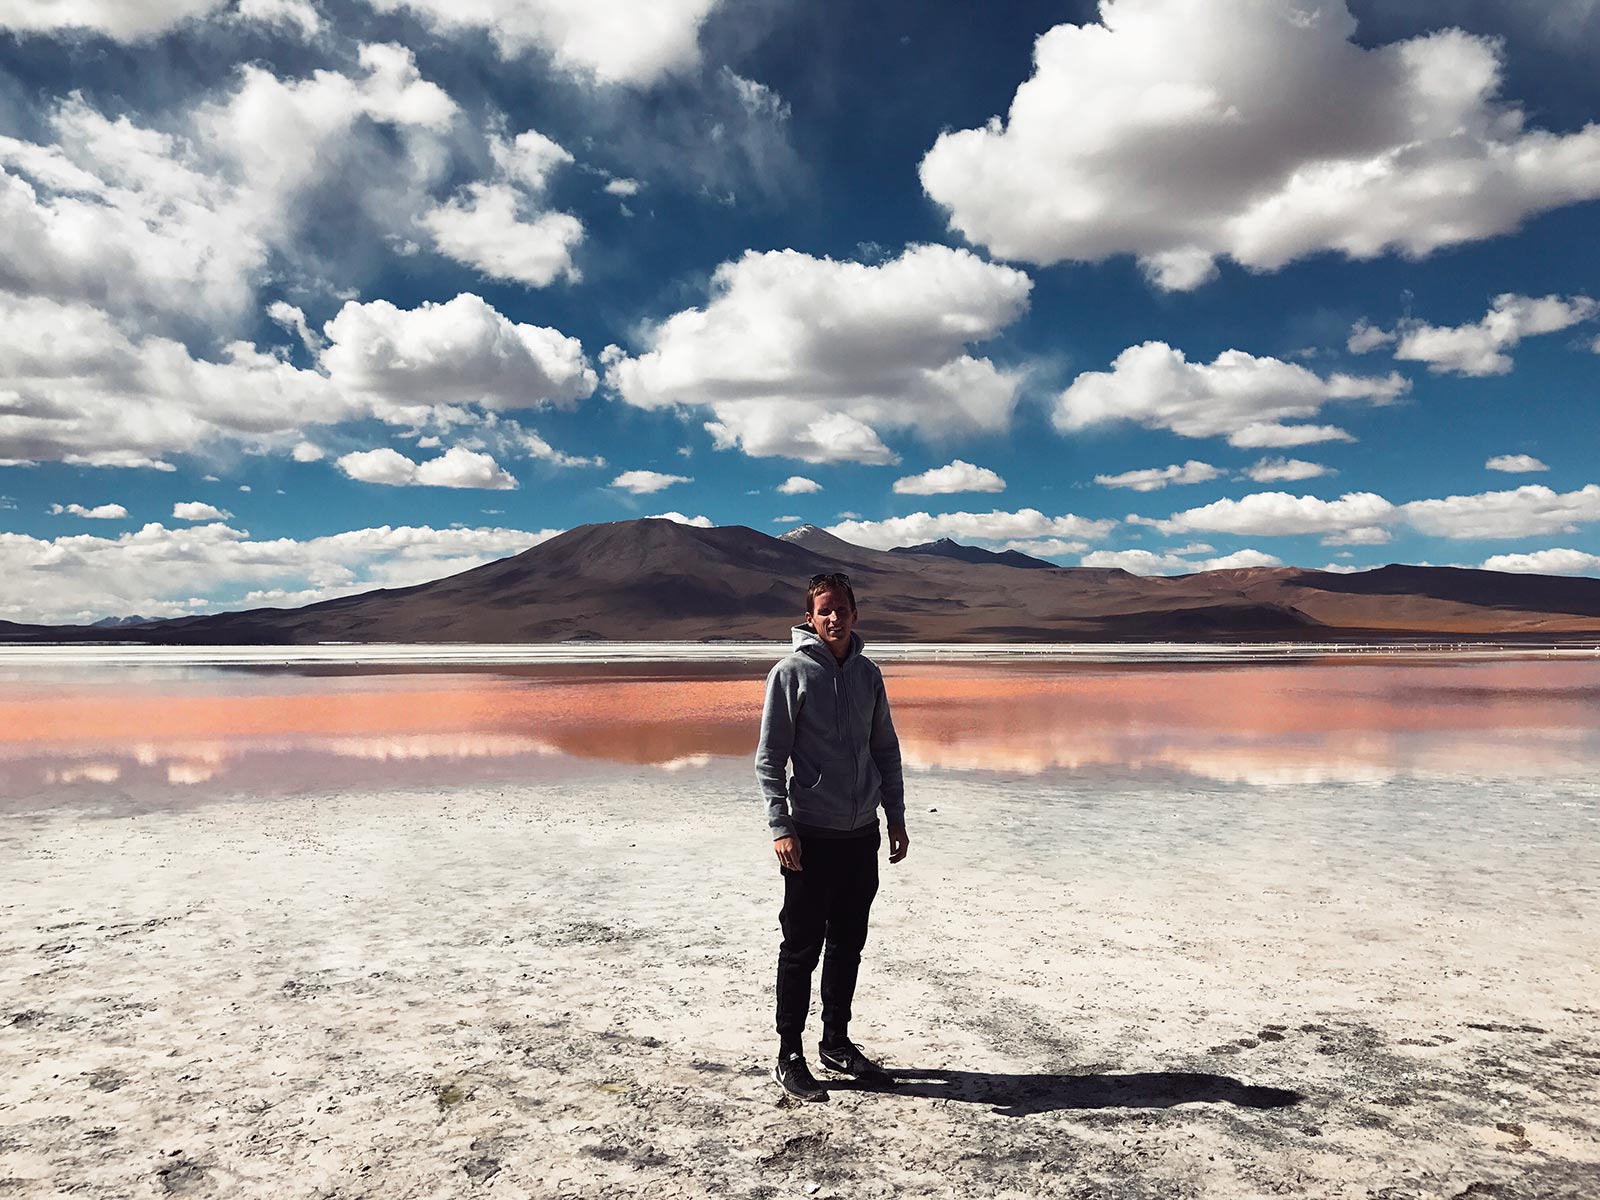 David Simpson at the desert mountain in Atacama, Chile. Atacama desert & Bolivian salt flats road trip & full guide